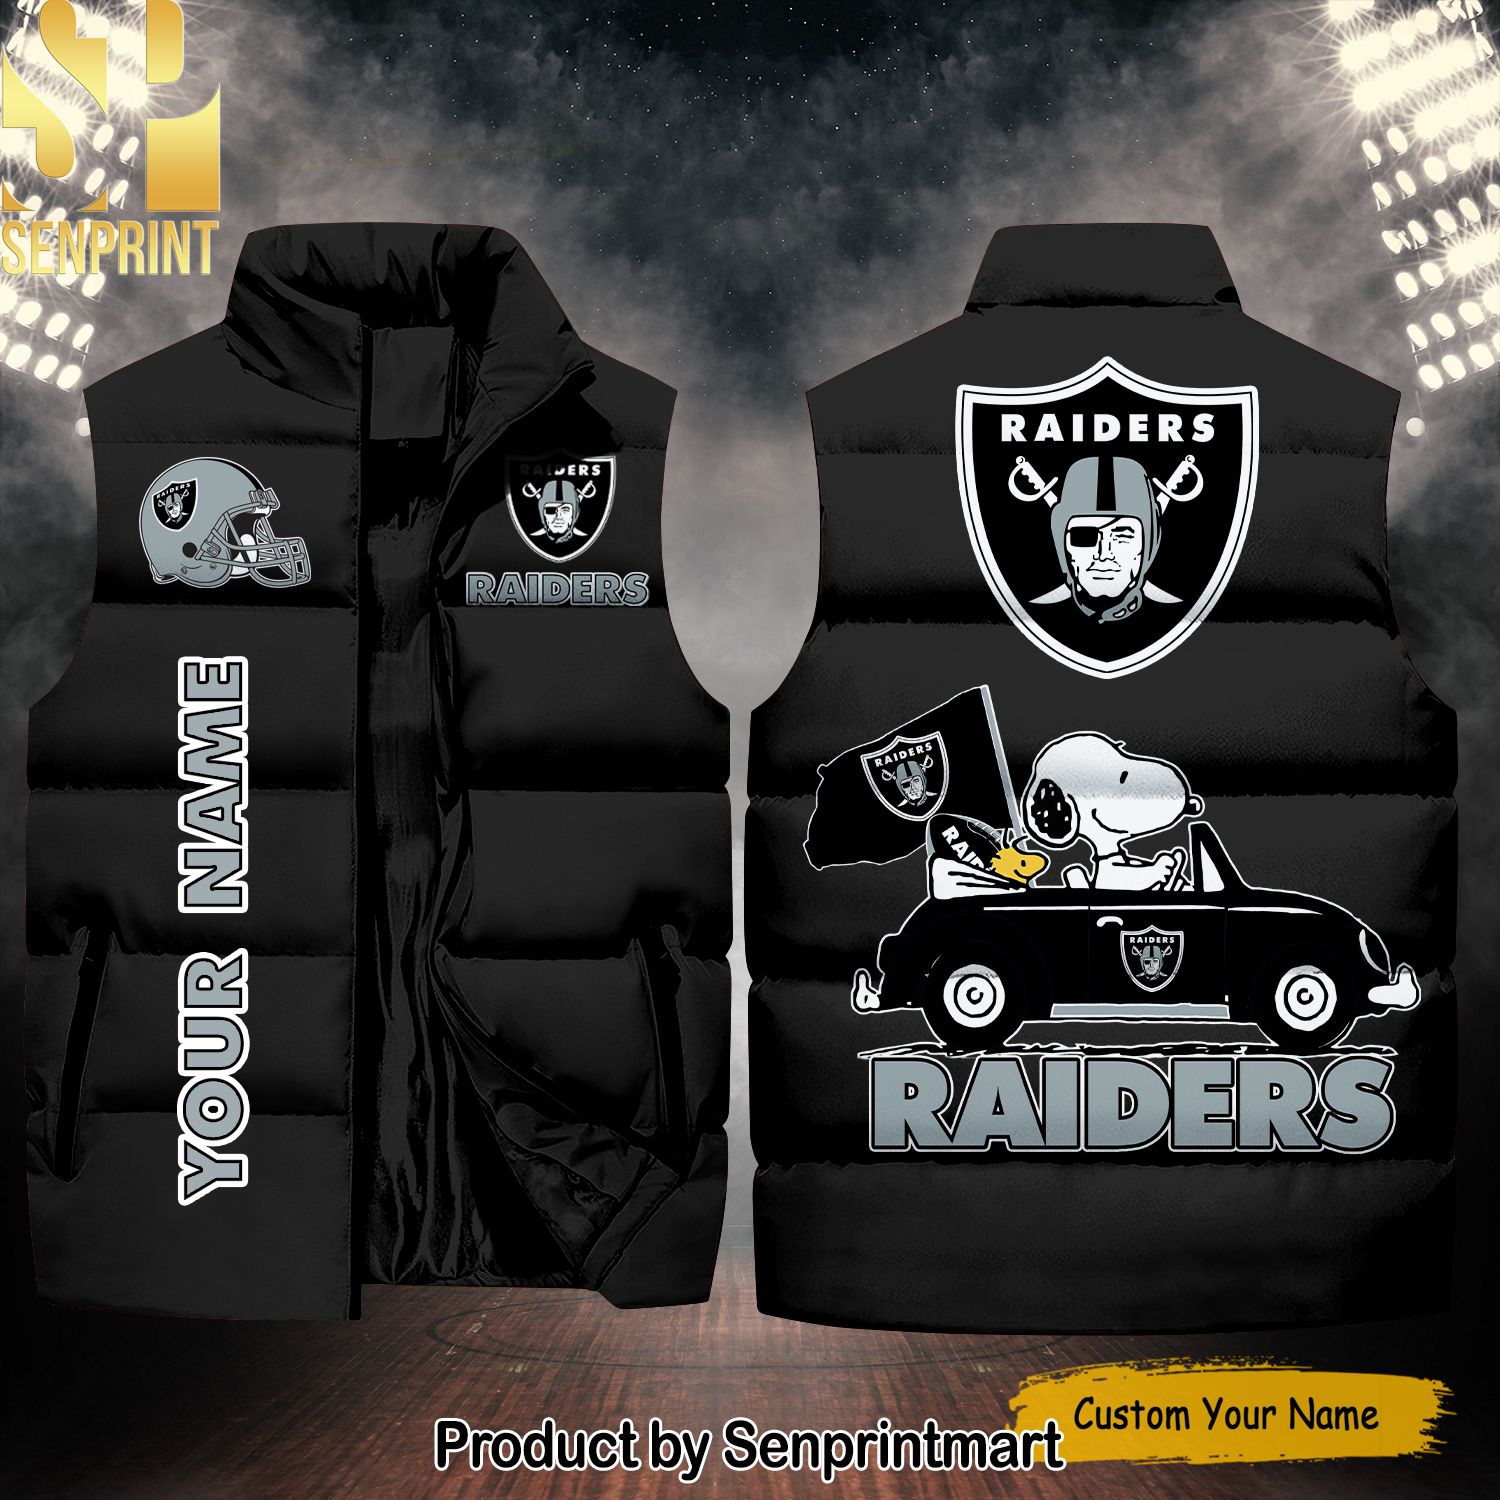 National Football League Las Vegas Raiders Peanuts Snoopy Unisex Sleeveless Jacket